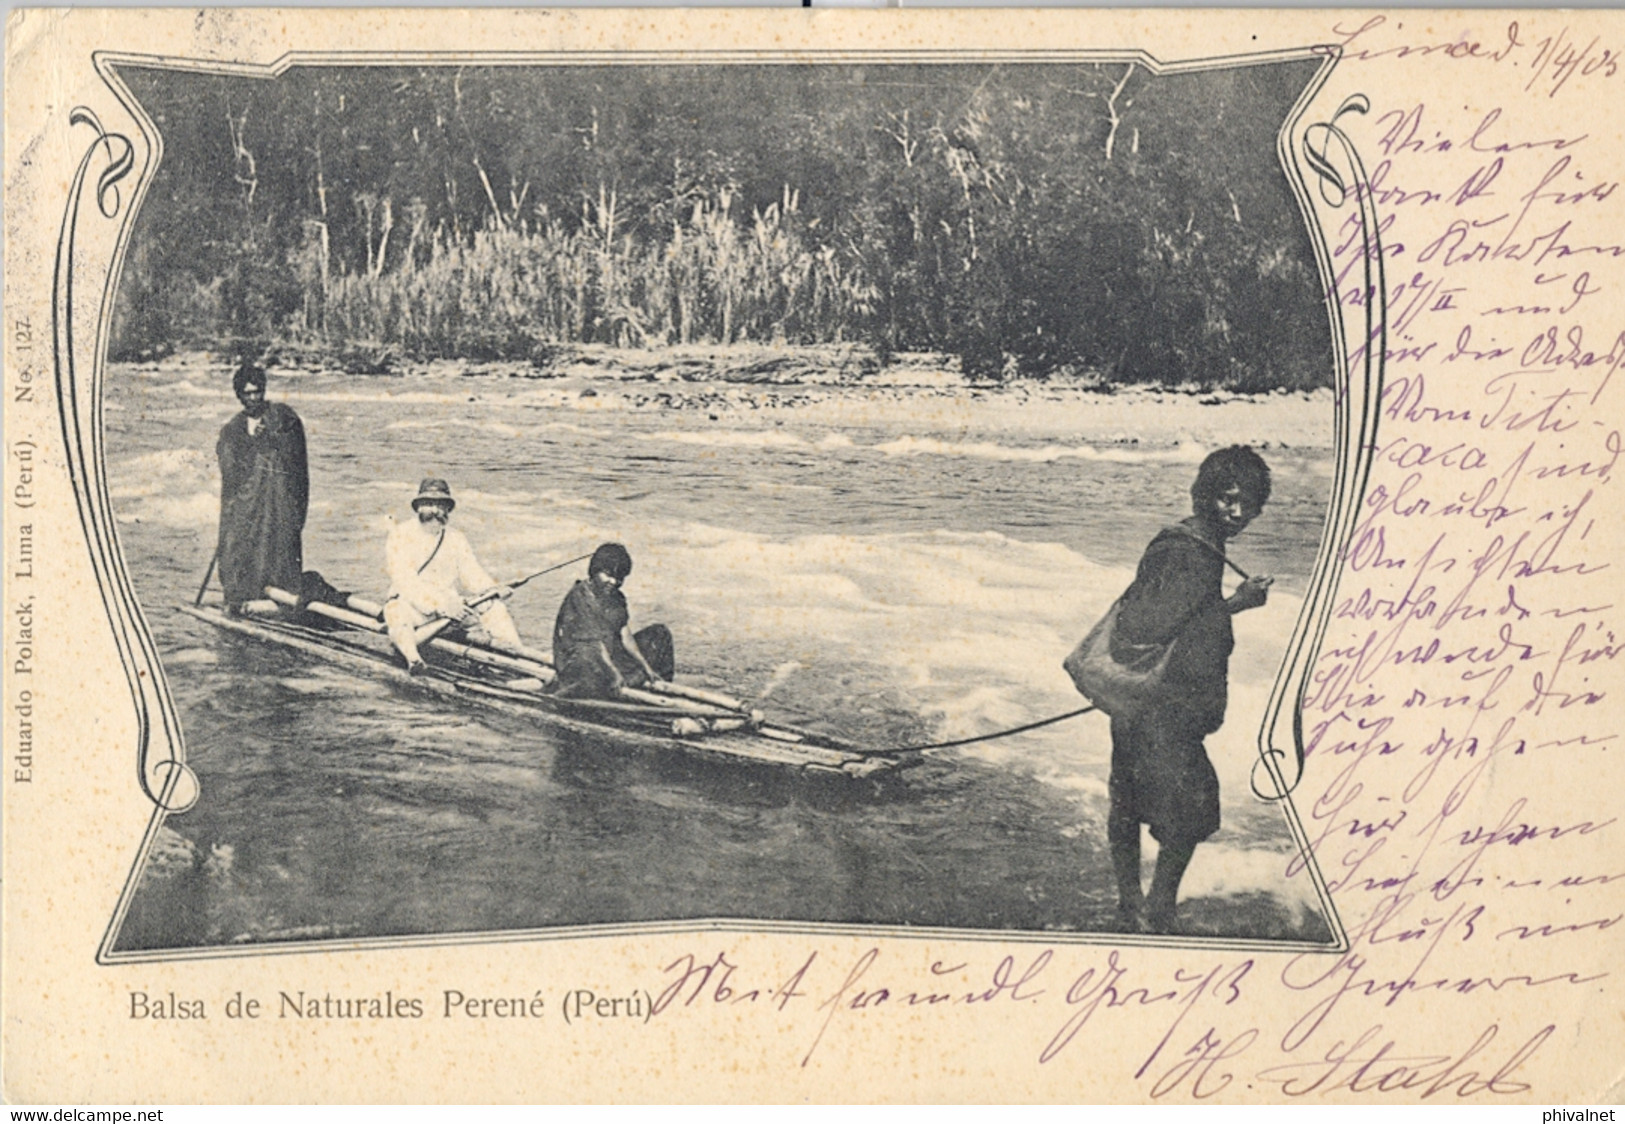 1905 PERÚ , T.P. CIRCULADA , LIMA - BERLIN , LLEGADA , BALSA DE NATURALES PERENÉ - Pérou